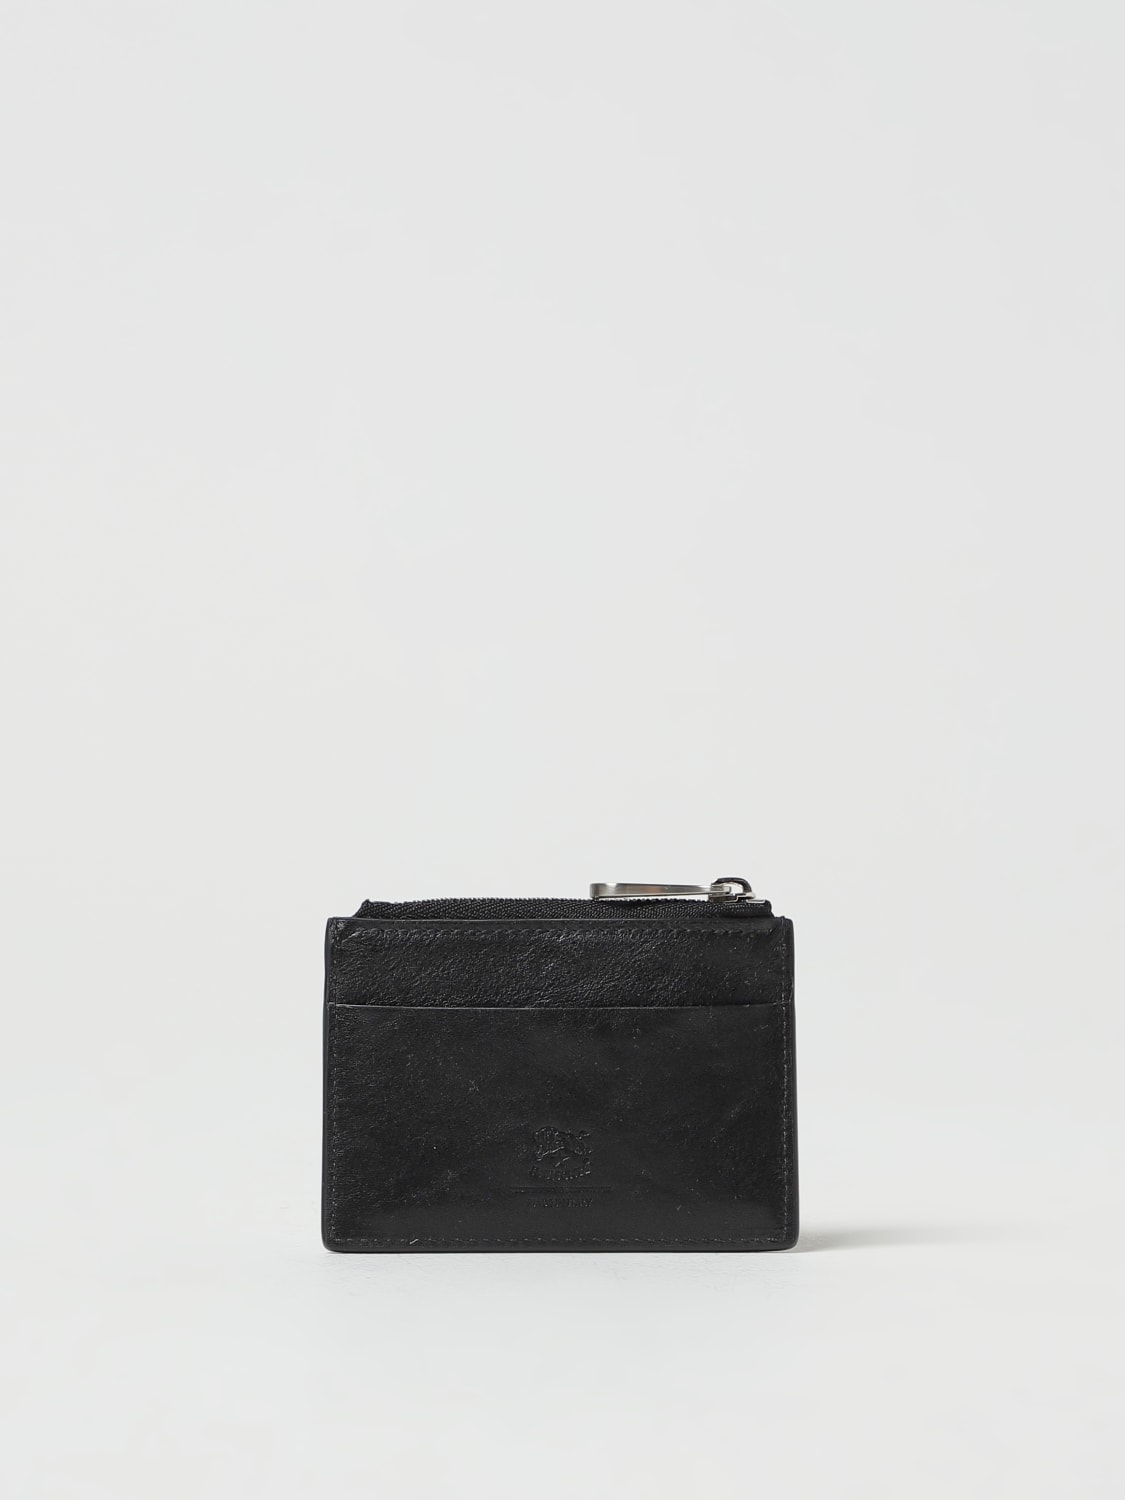 Black leather zip pocket cardholder